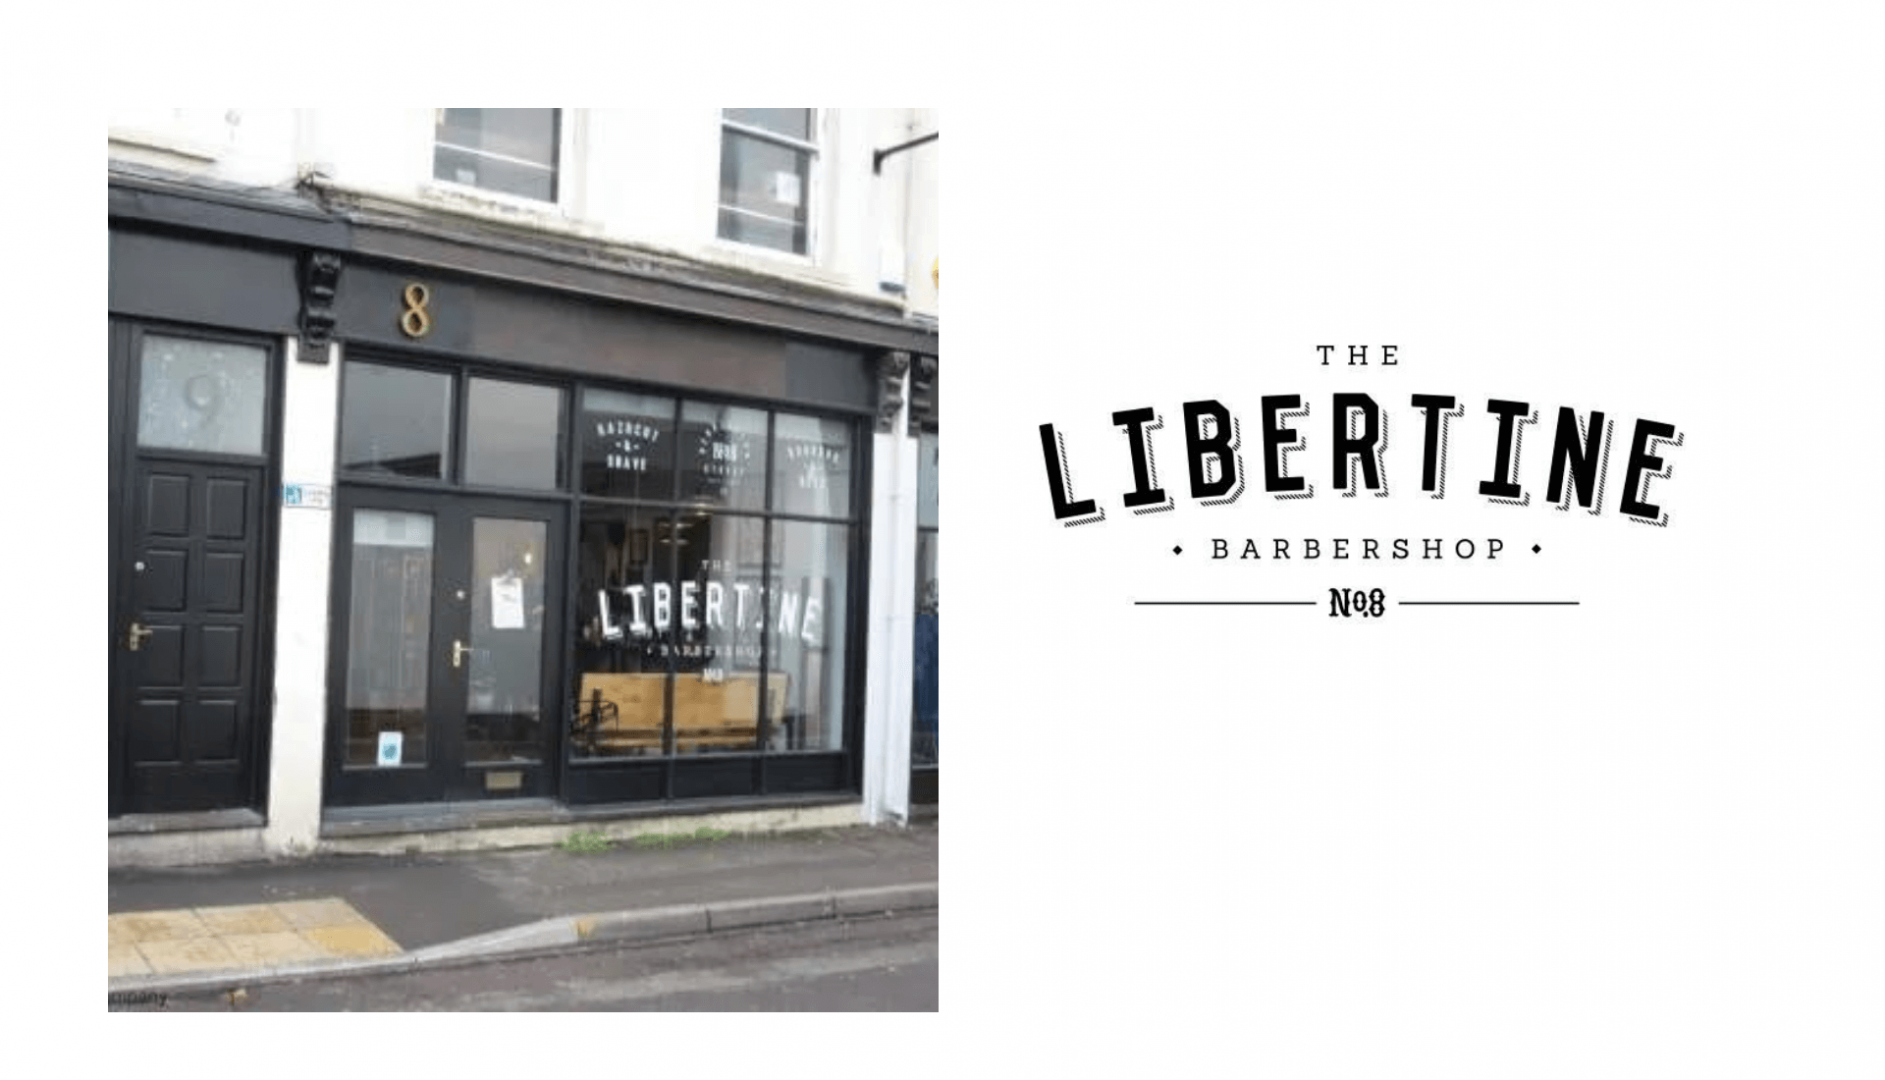  The Libertine Barbershop in Cheltenham